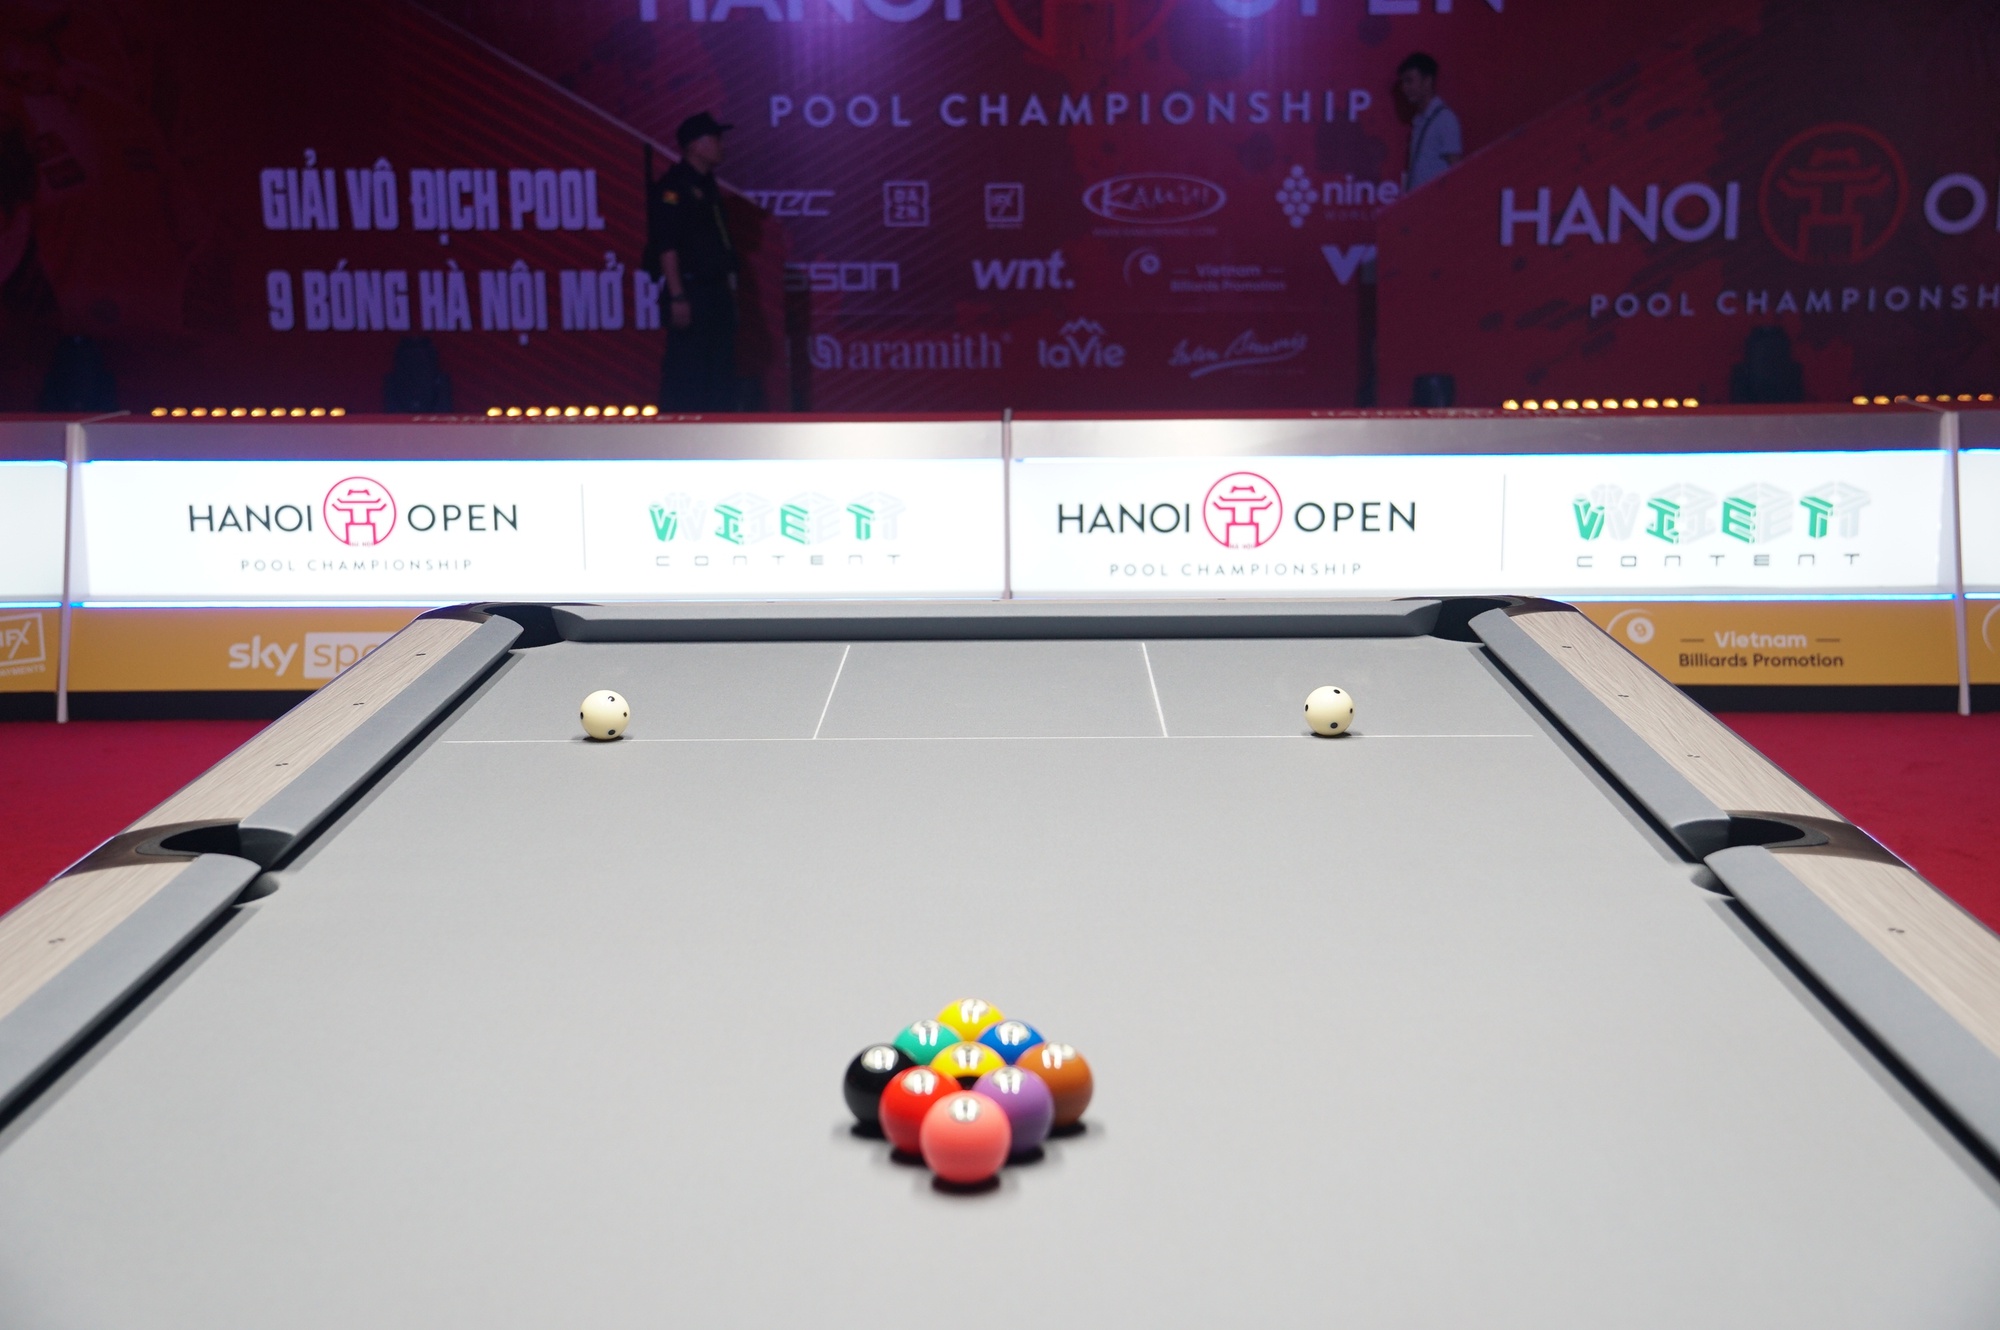 128 cơ thủ hàng đầu thế giới hội tụ ở giải Hanoi Open Pool Championship - Ảnh 4.